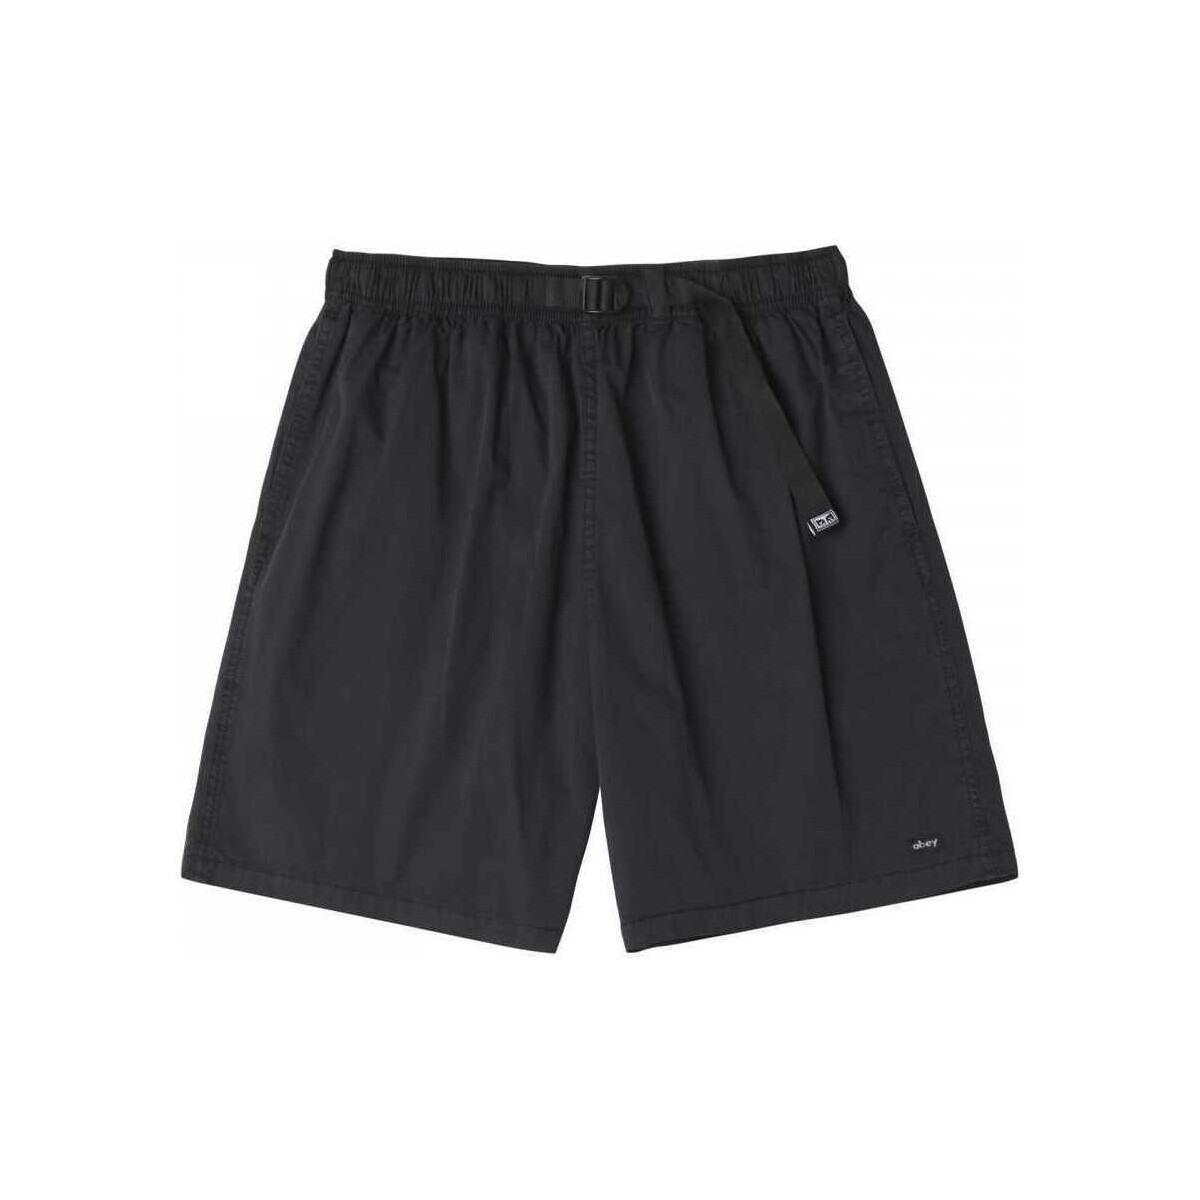 textil Hombre Shorts / Bermudas Obey Easy pigment trail short Gris